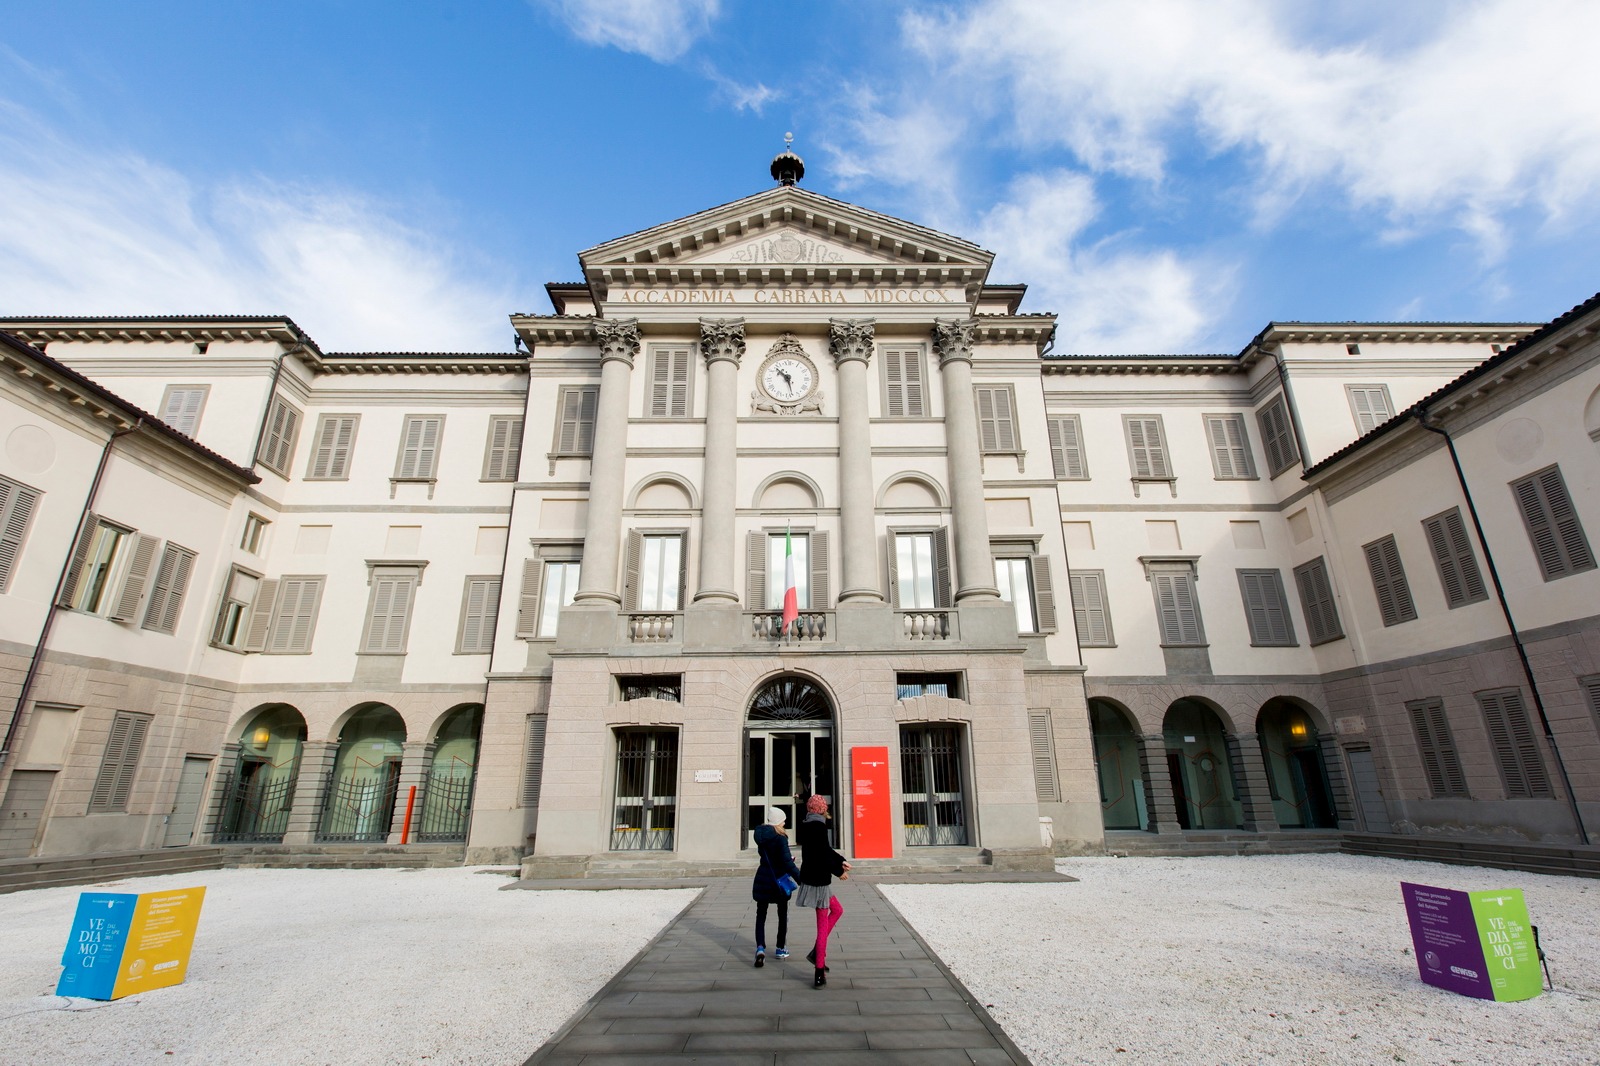 Accademia Carrara, Bergamo